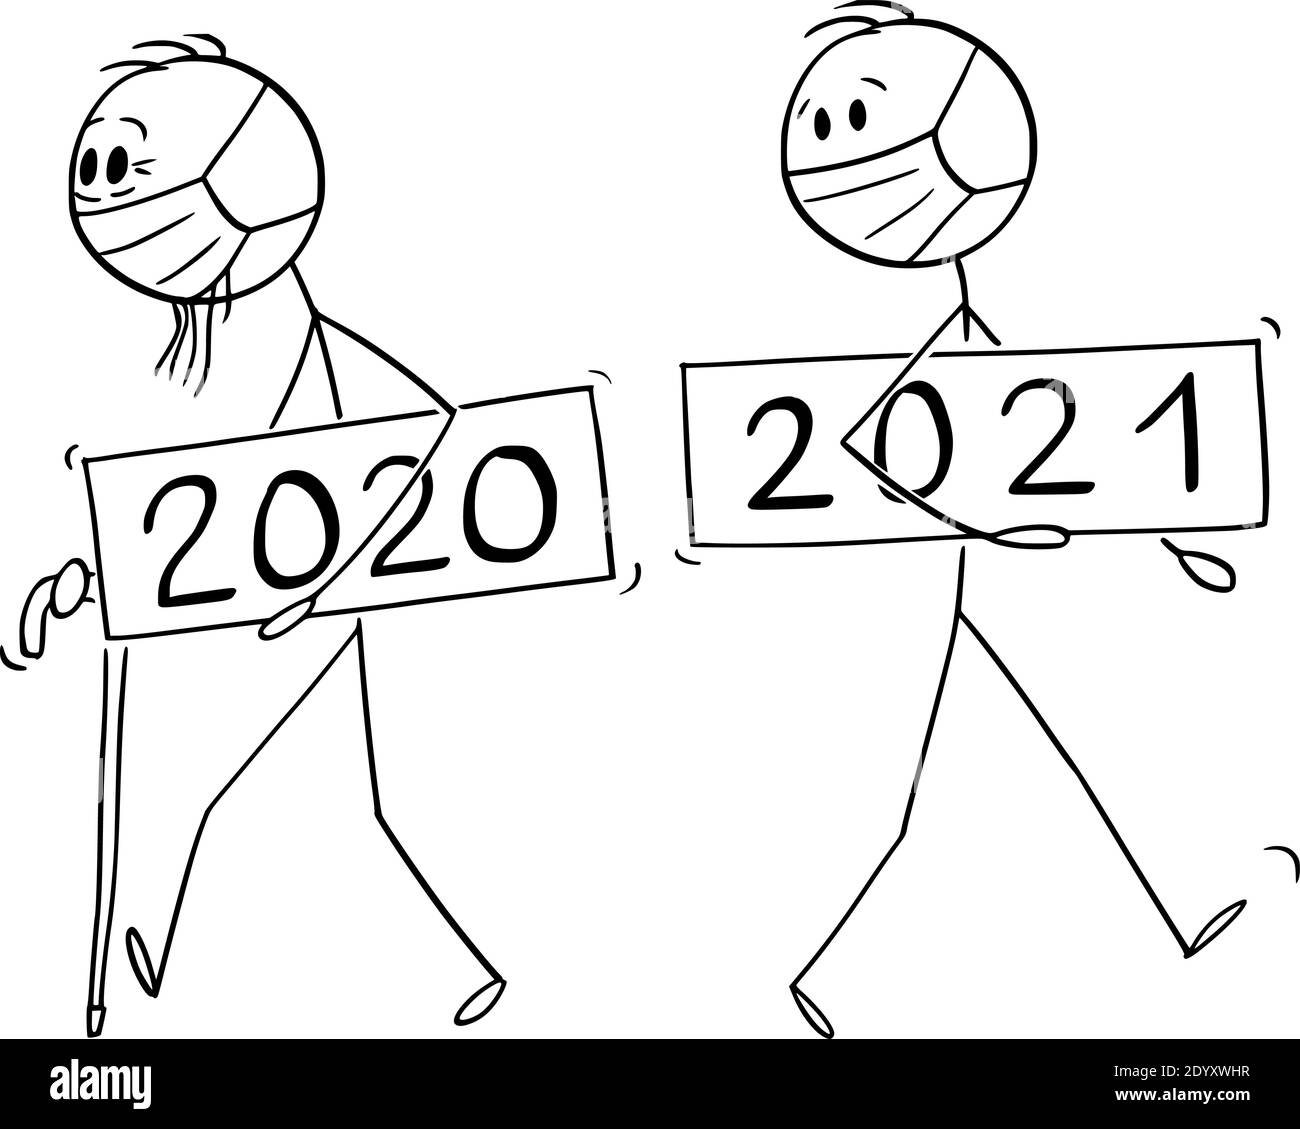 Vektor-Cartoon-Stick Figur Abbildung des alten Mannes Jahr 2020 wird verlassen, ist neues Jahr 2021 eingehenden. Beide tragen Coronavirus covid-19 schützende Gesichtsmaske. Epidemische oder pandemische Konzept. Stock Vektor